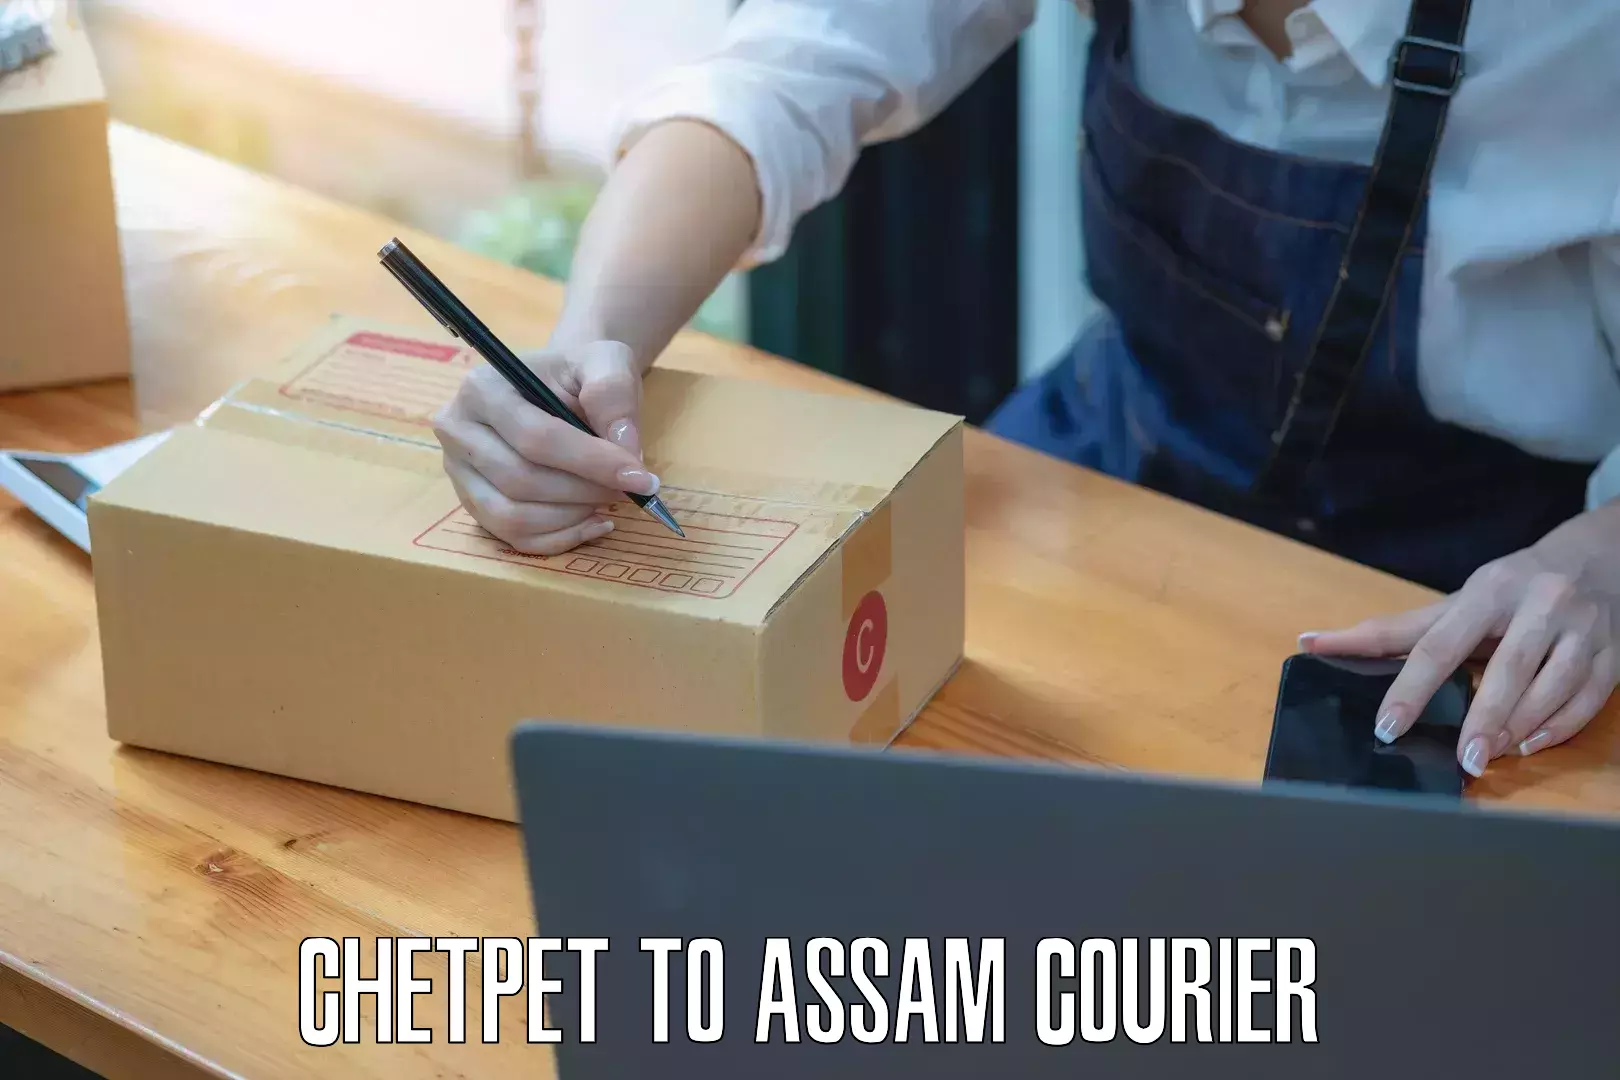 Ocean freight courier Chetpet to Assam